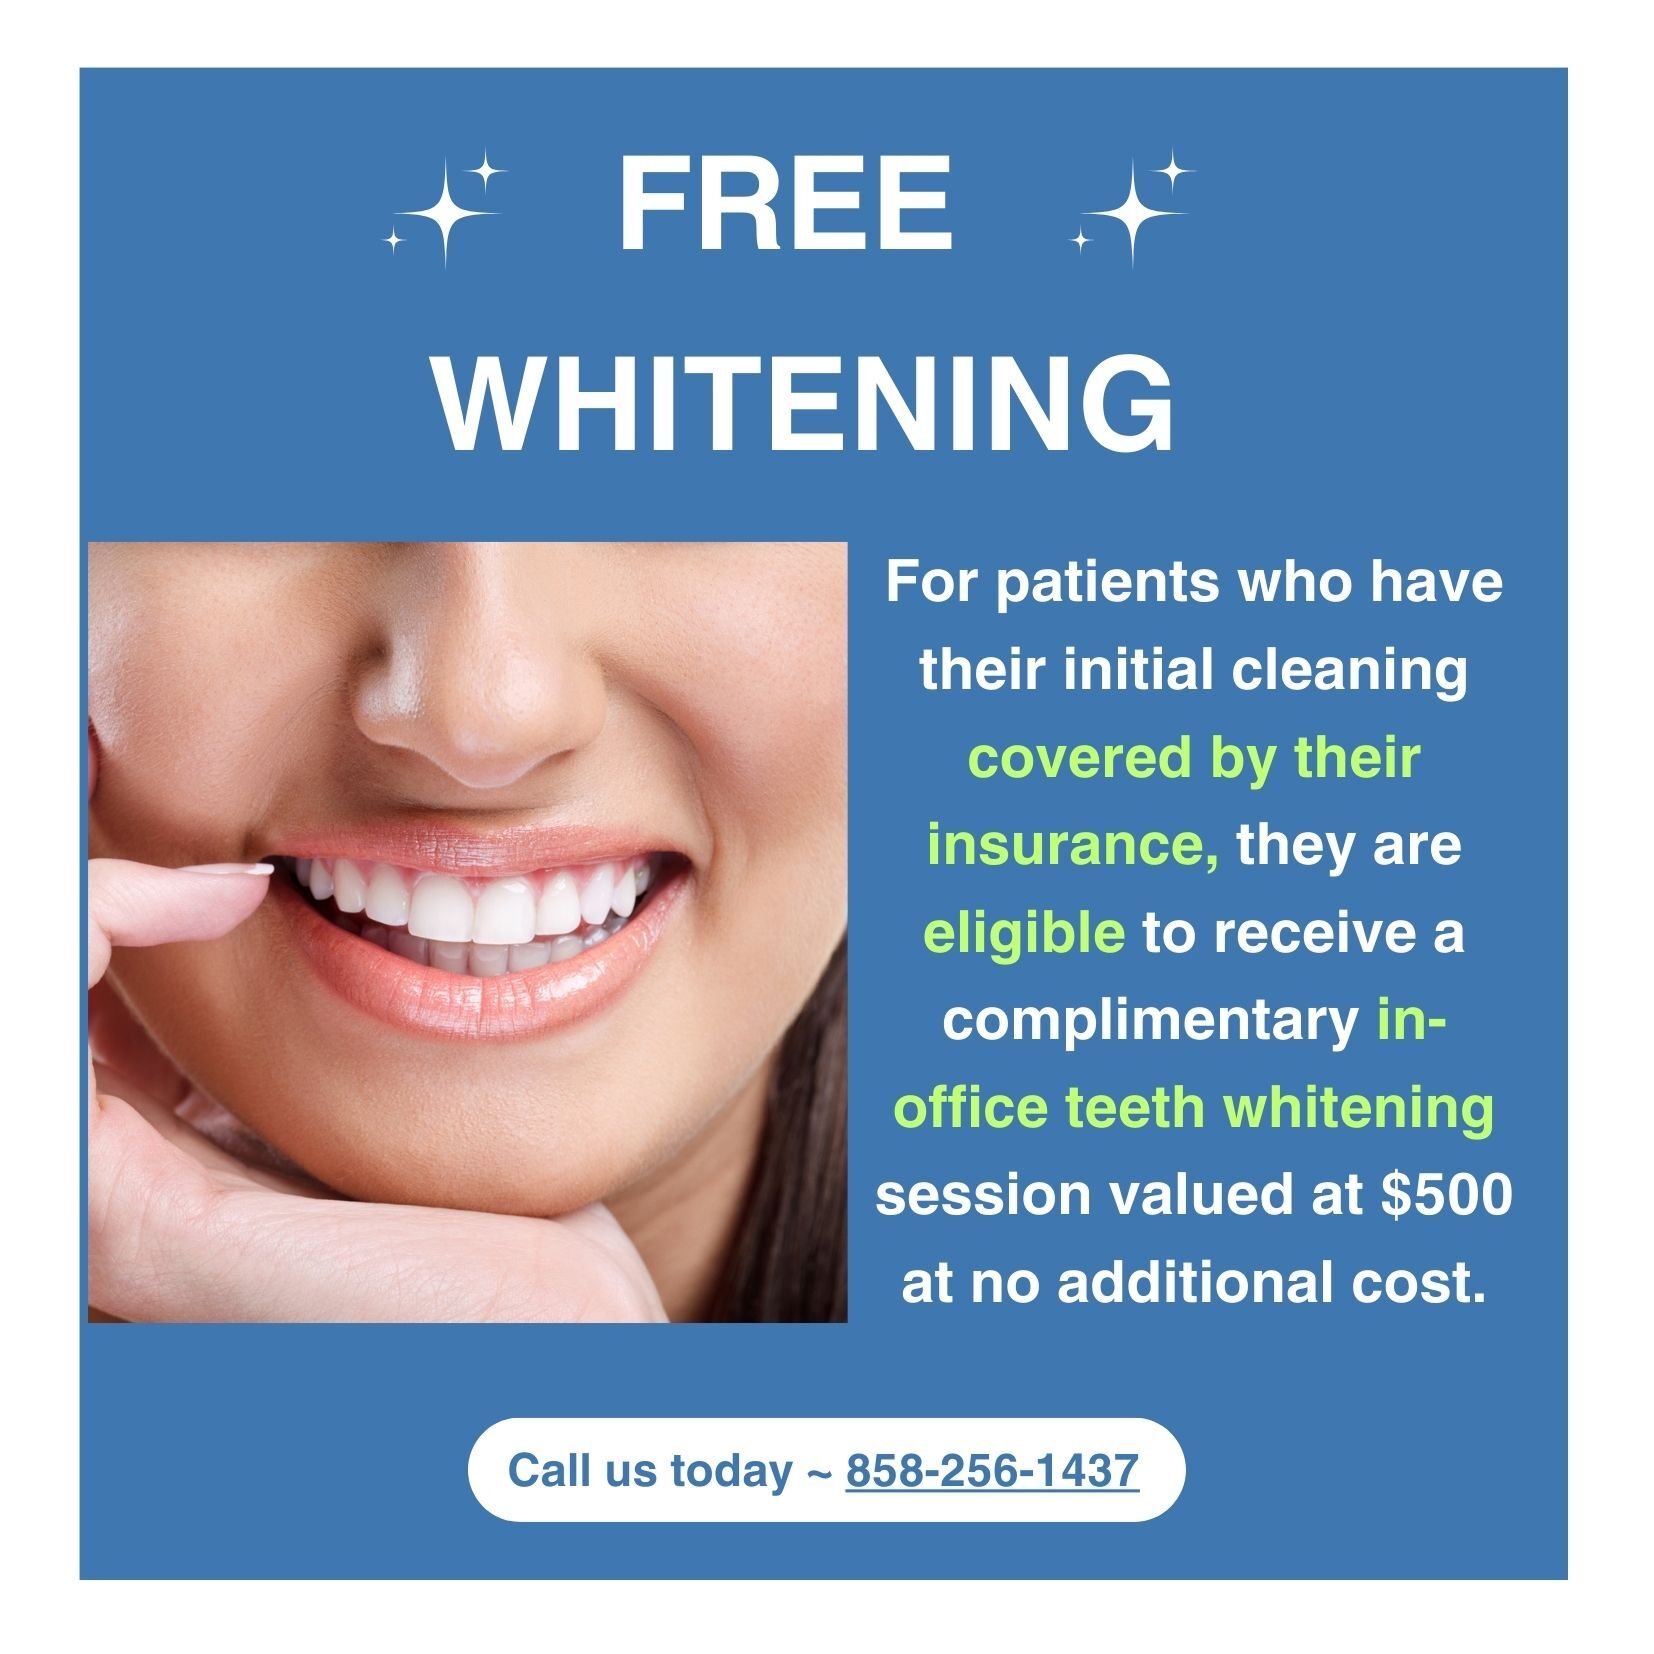 Free whitening